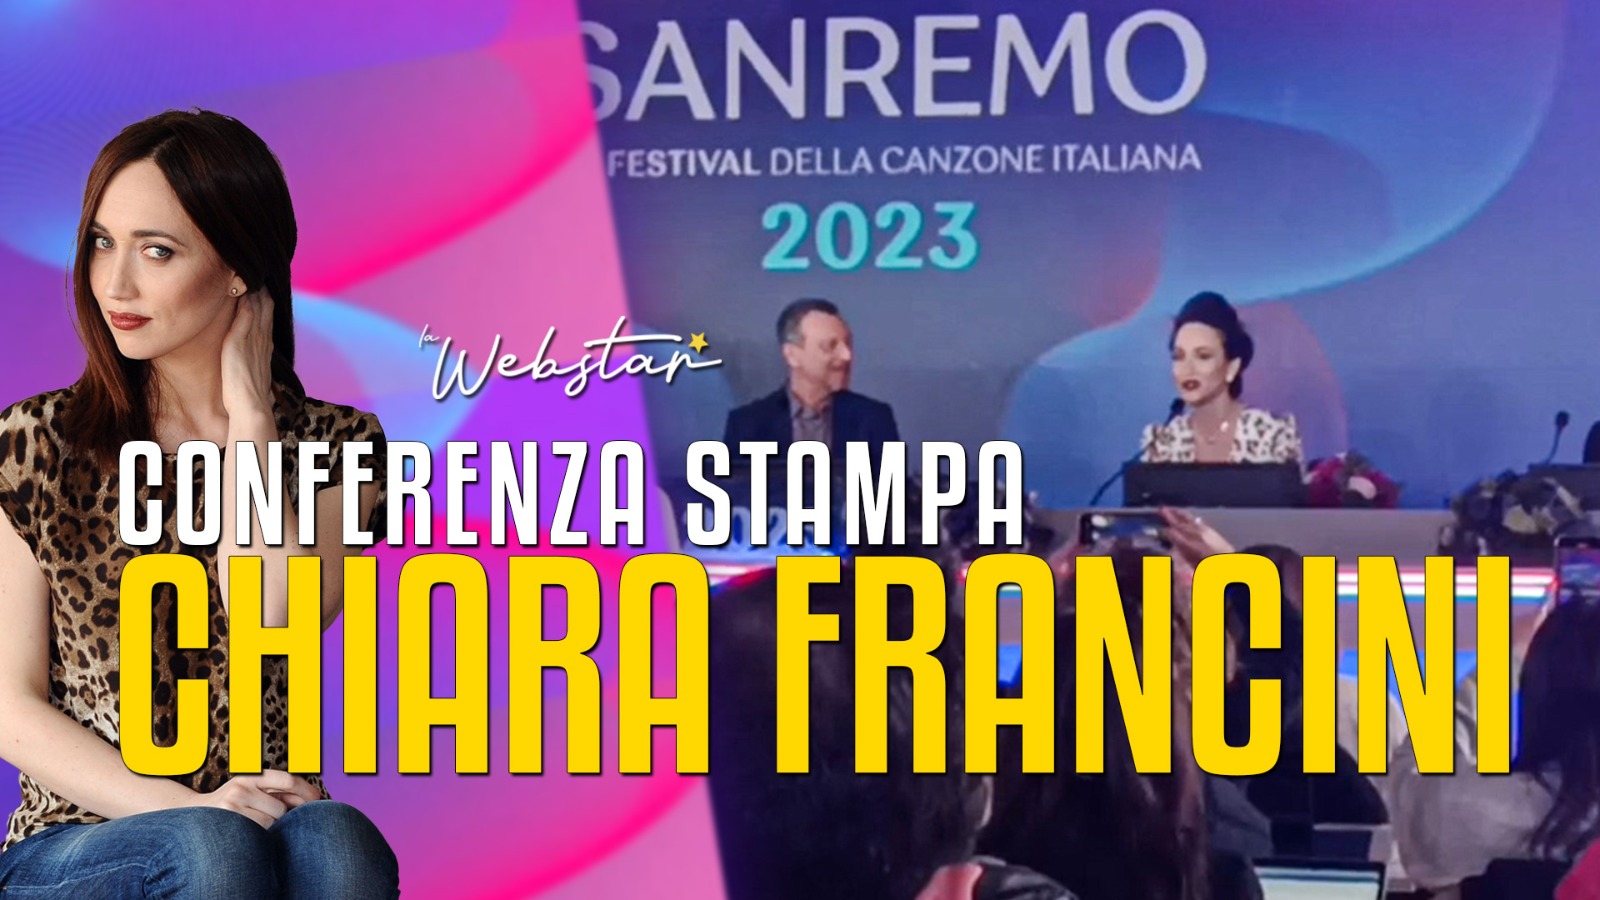 Chiara Francini Festival di Sanremo 2023